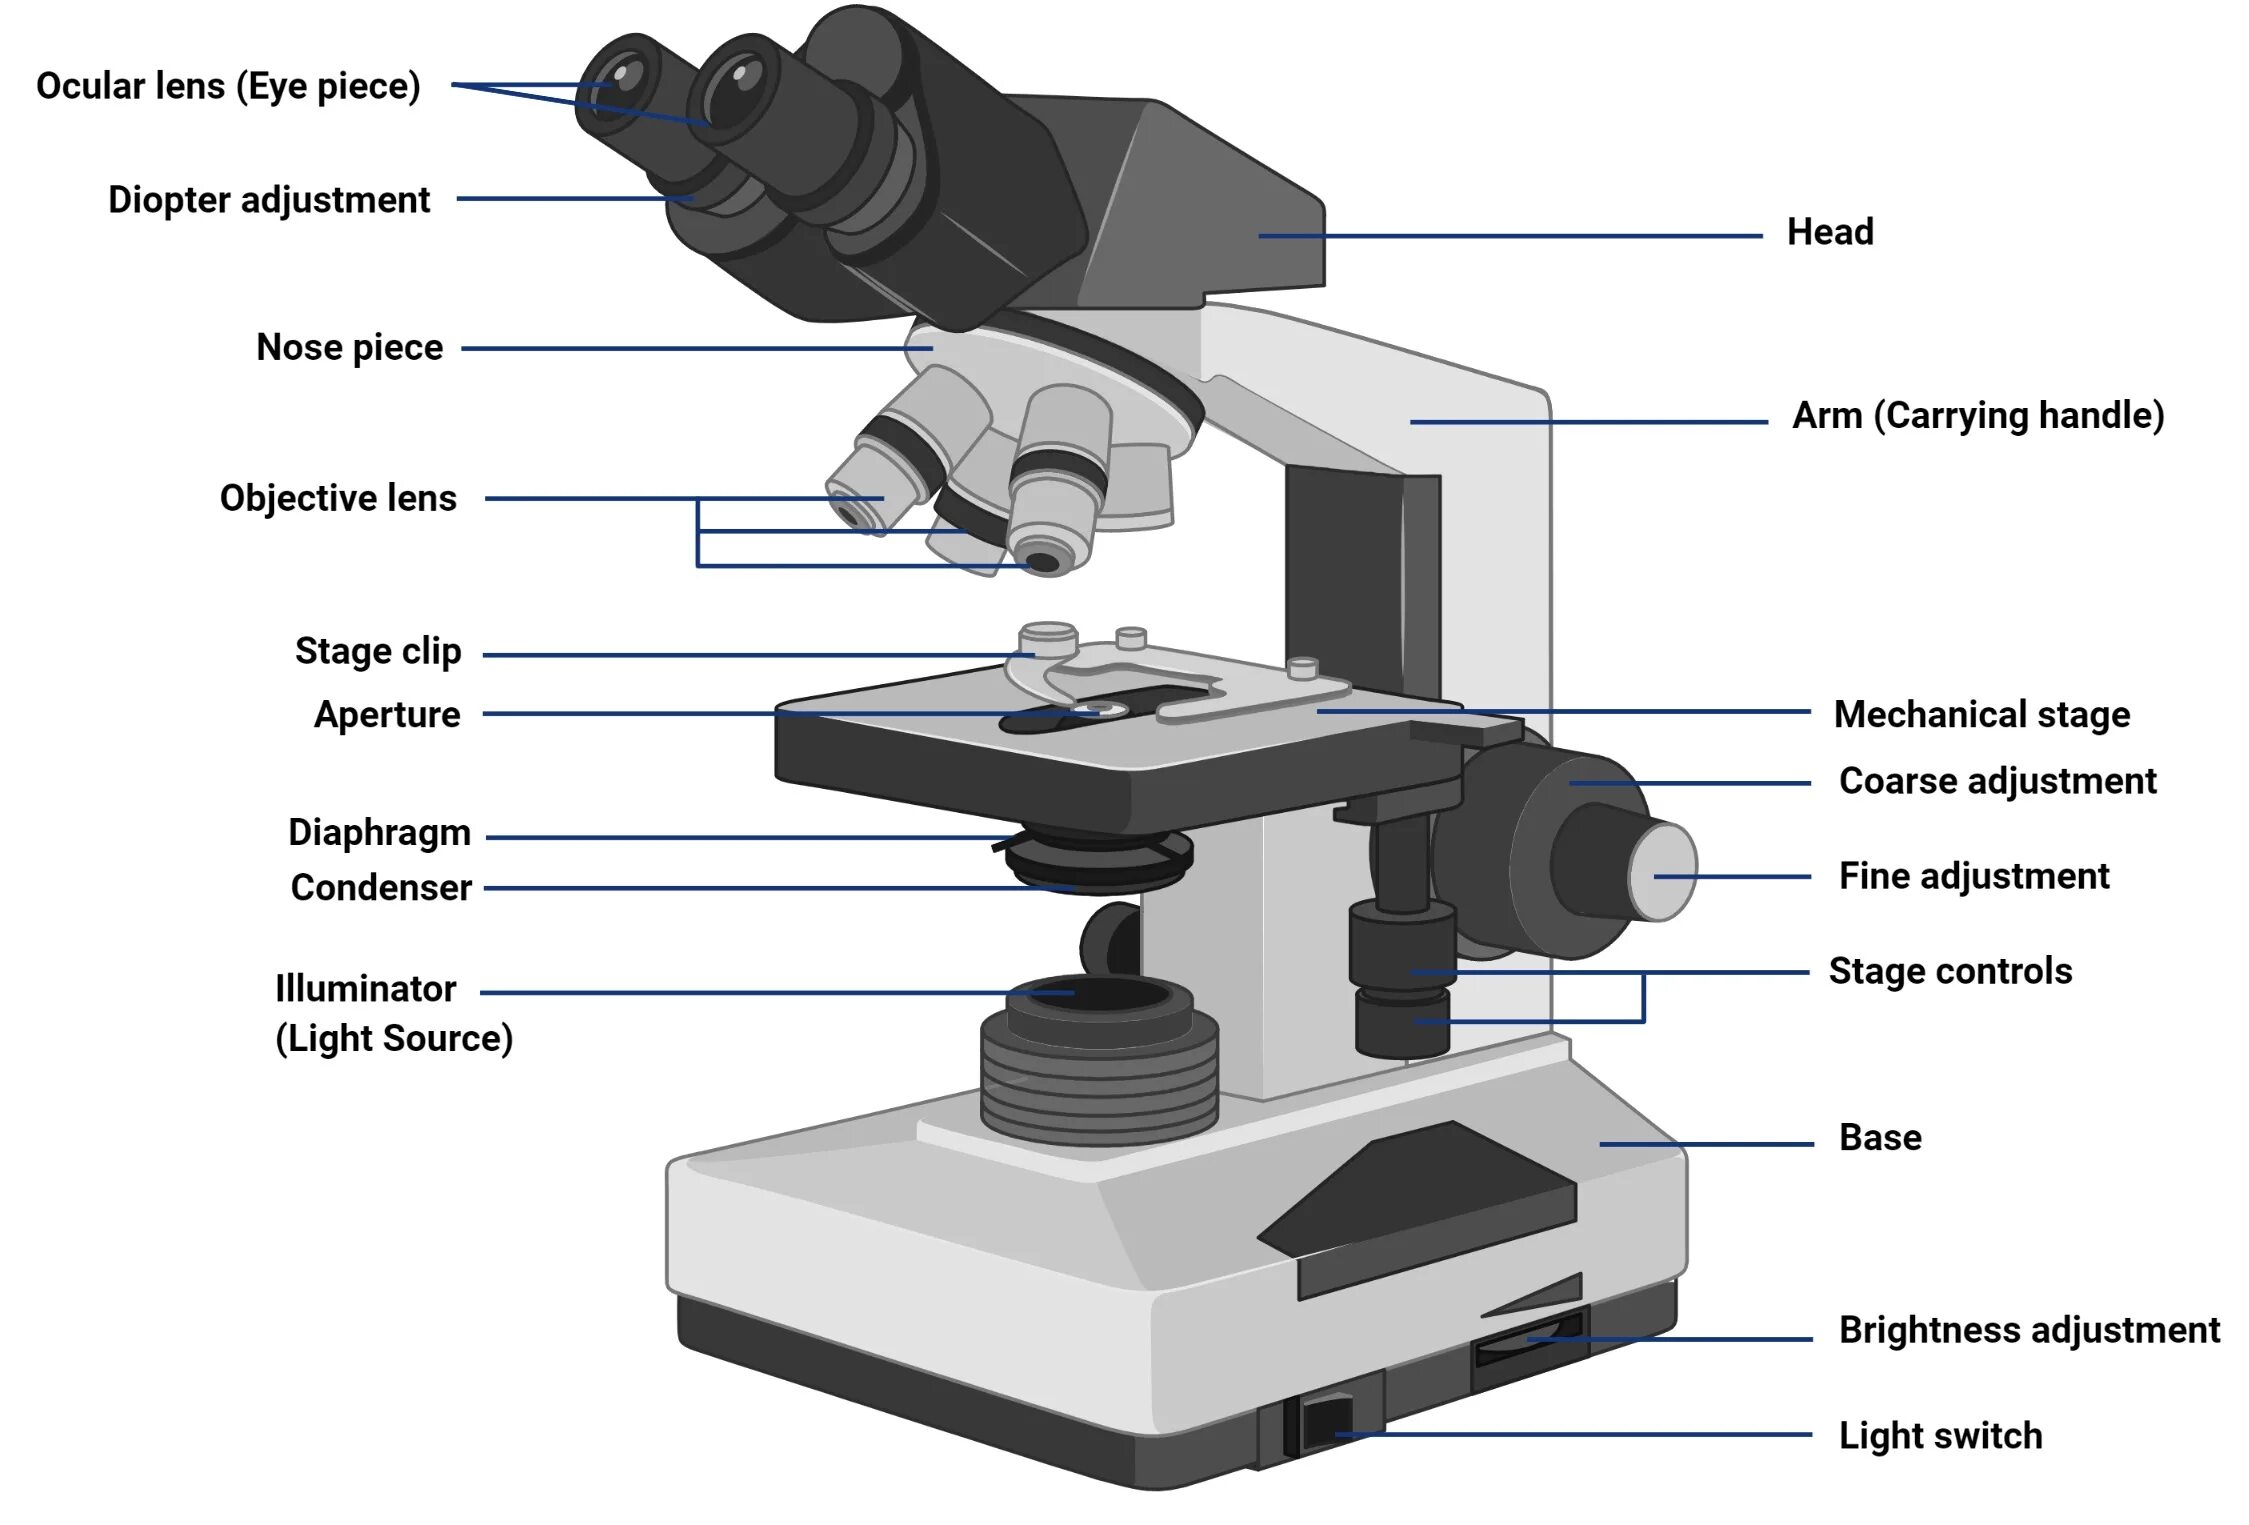 Какую функцию выполняет объектив при работе микроскопа. Микроскоп p5000i Digital Analysis Microscope. Микроскоп с2108. Строение микроскопа макровинт. Строение микроскопа Микмед.